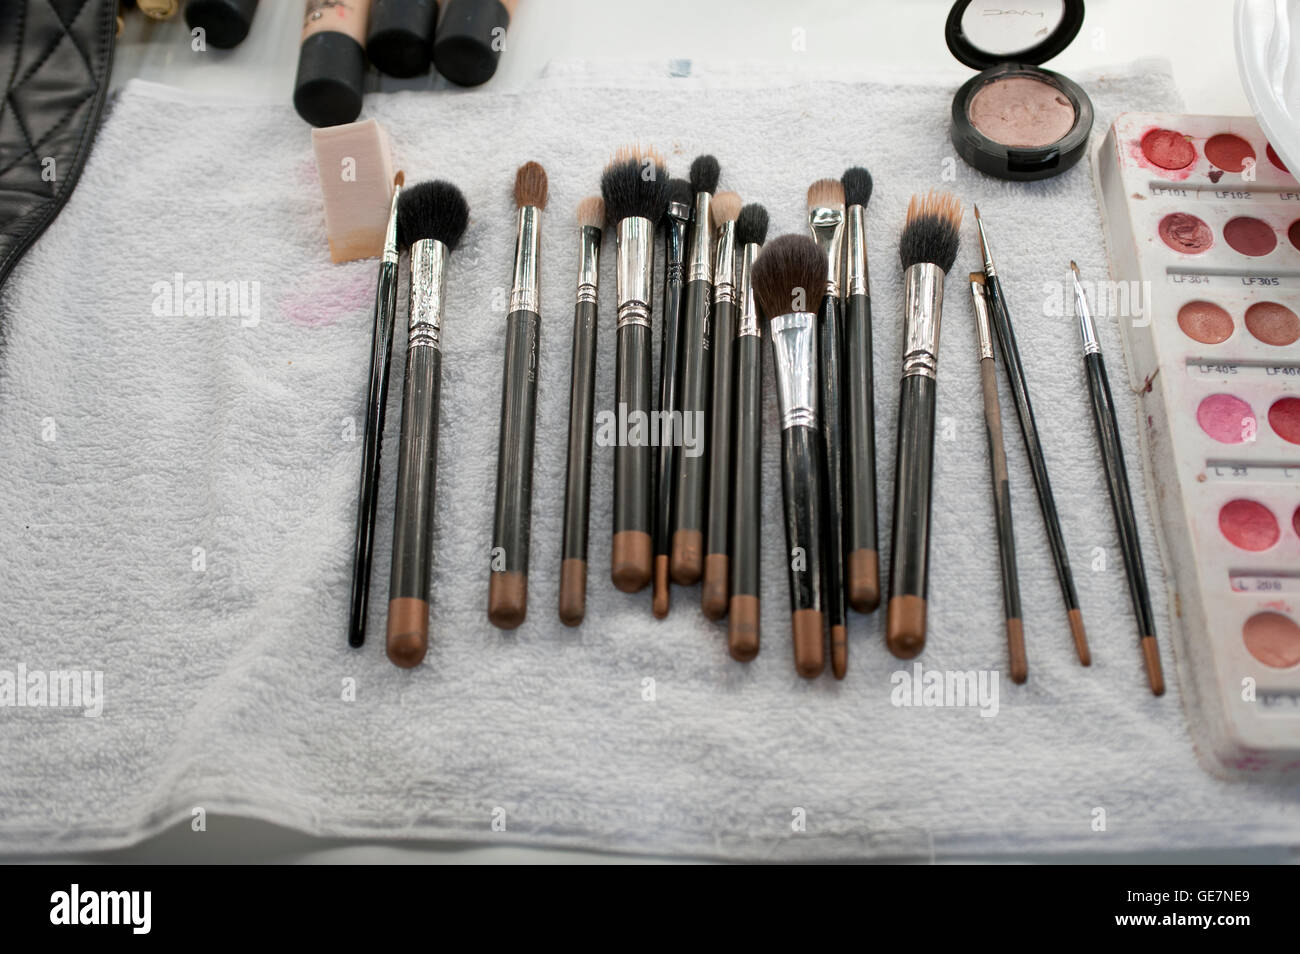 makeup brushes Stock Photo